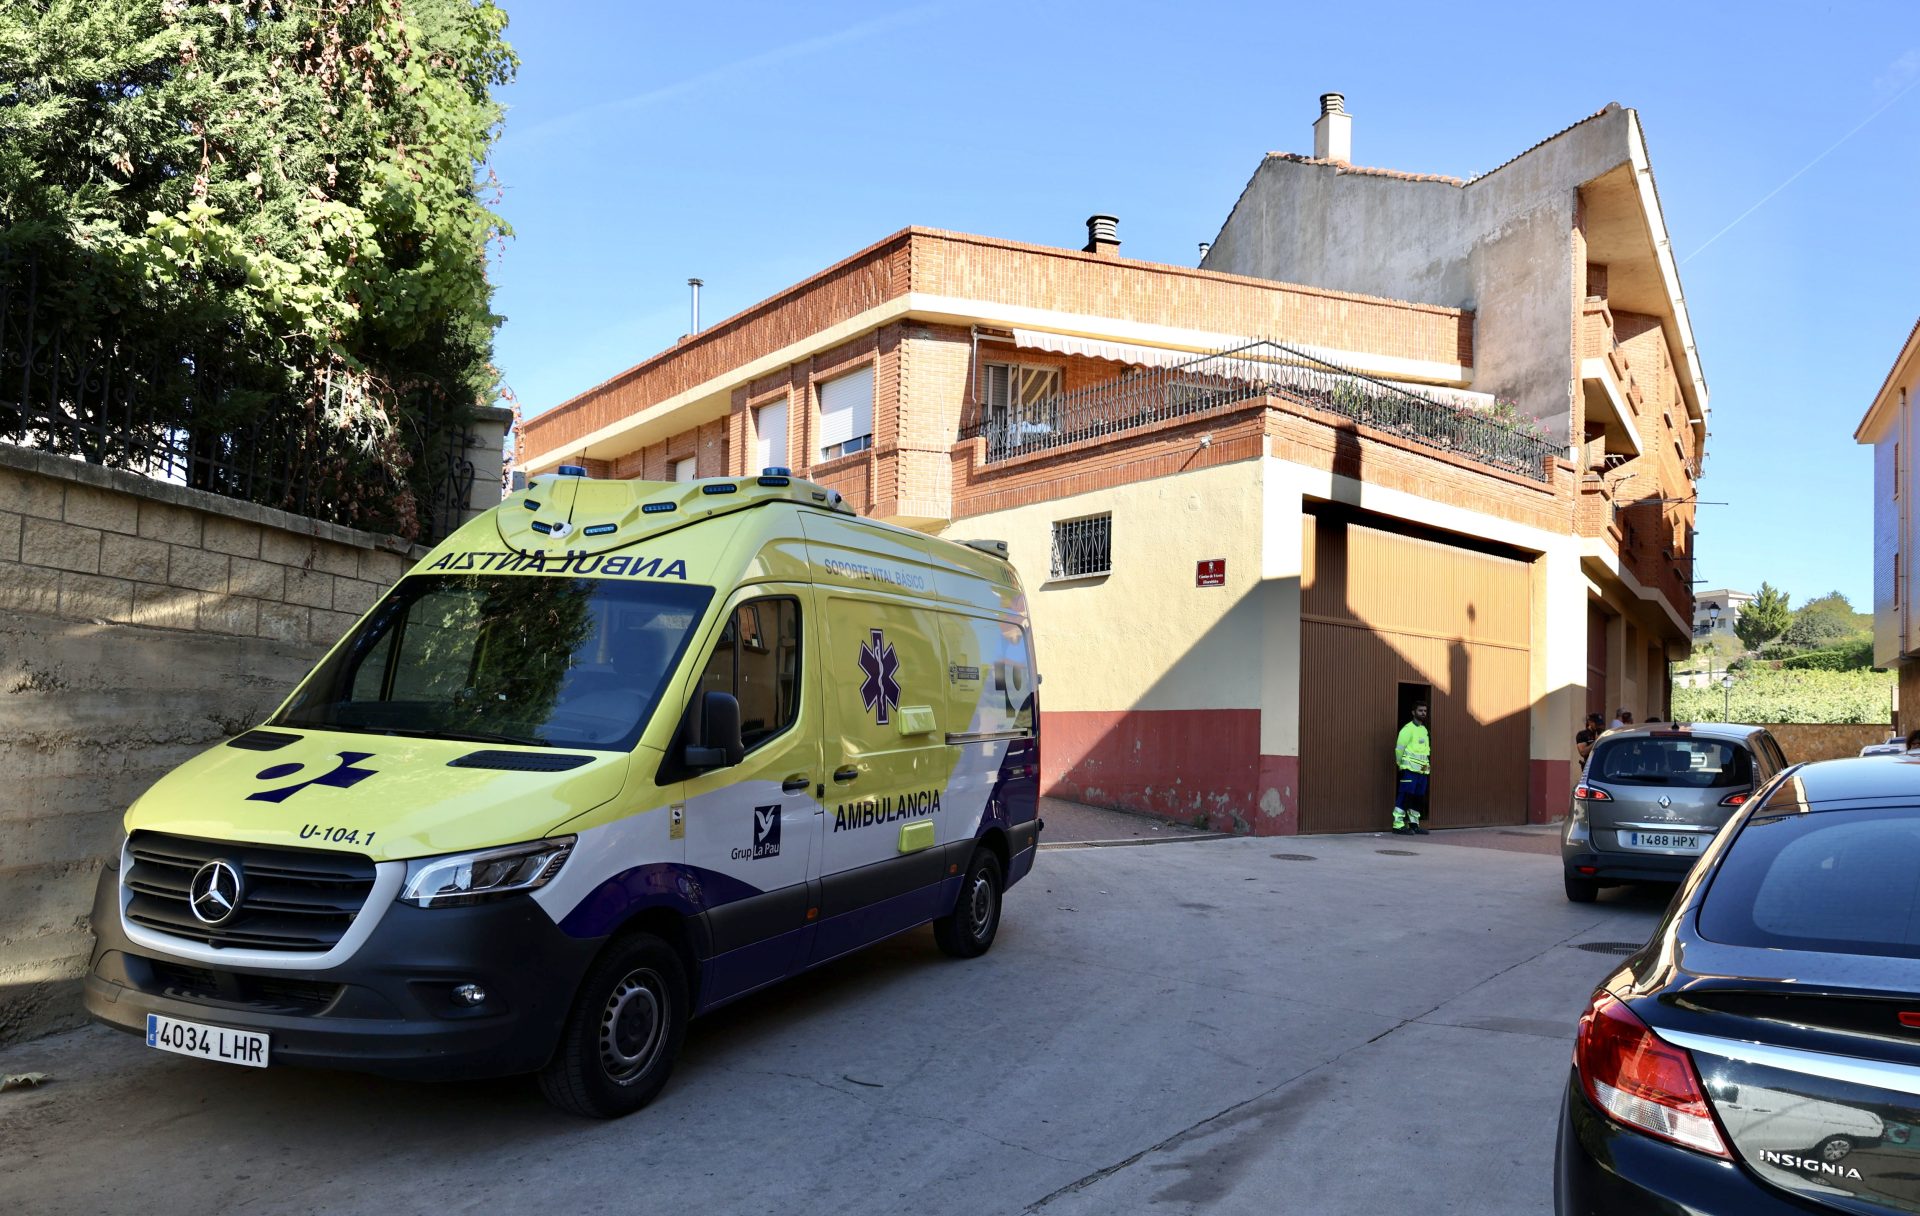 Dos personas han fallecido y otra ha resultado herida y evacuada a un hospital de Logroño en un accidente laboral ocurrido este domingo en una bodega de elaboración de vino de la localidad alavesa de Lanciego.